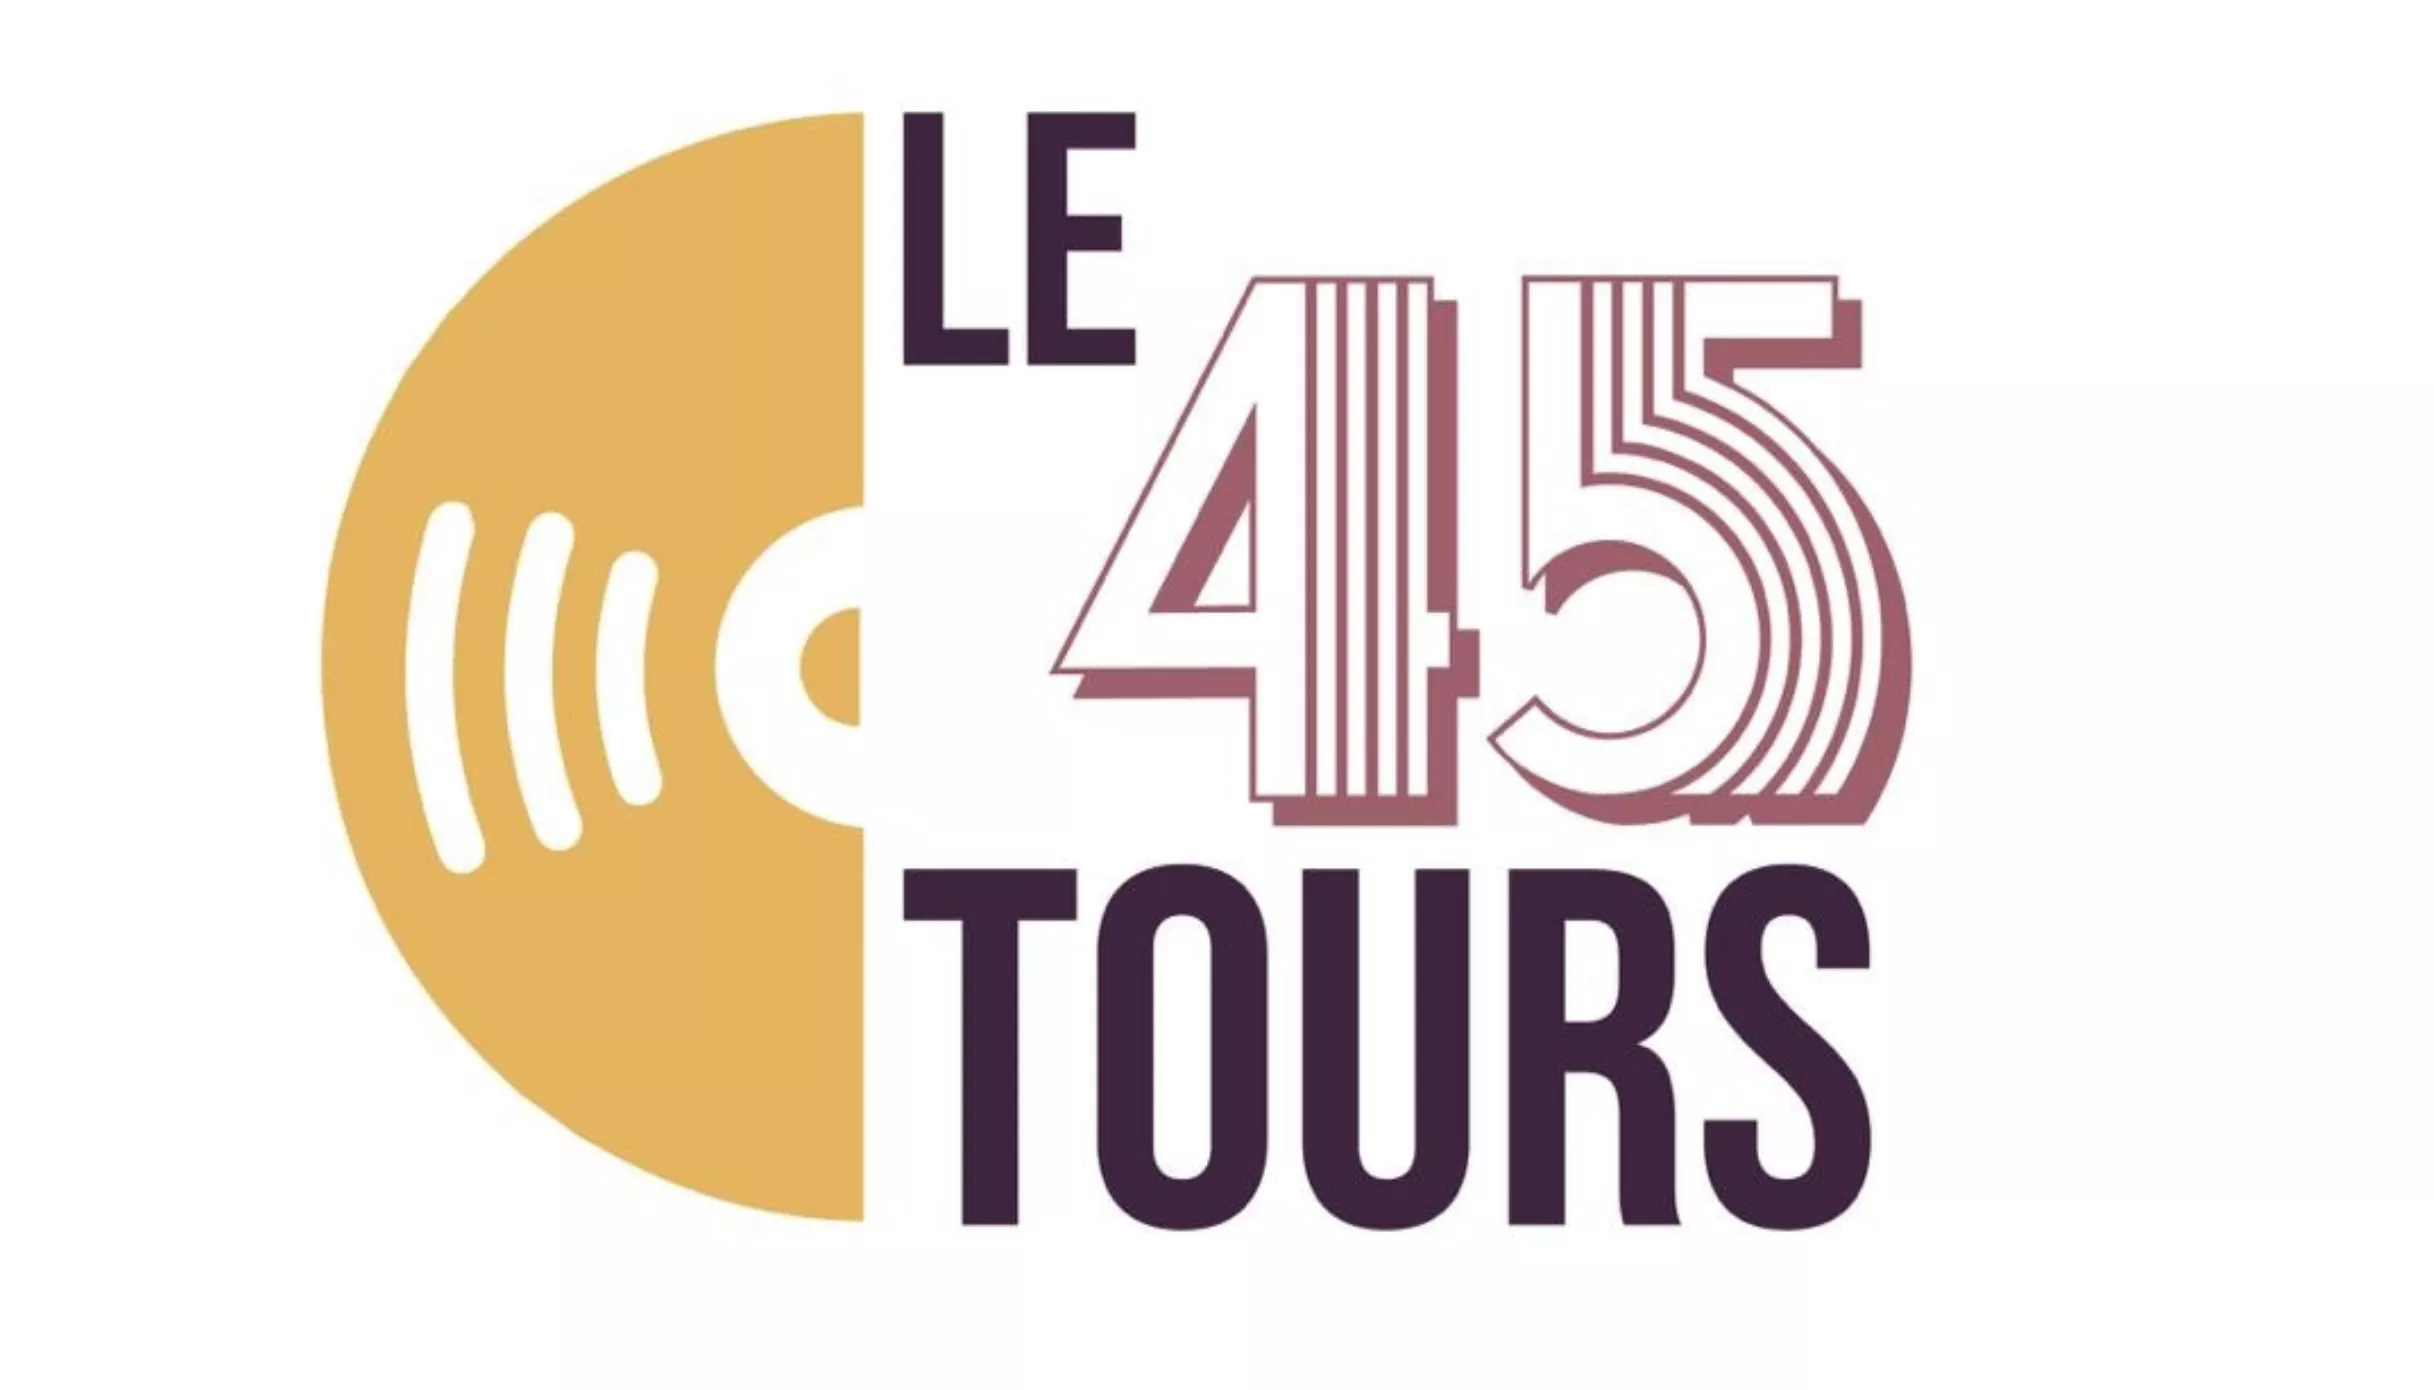 Logo Le 45 Tours